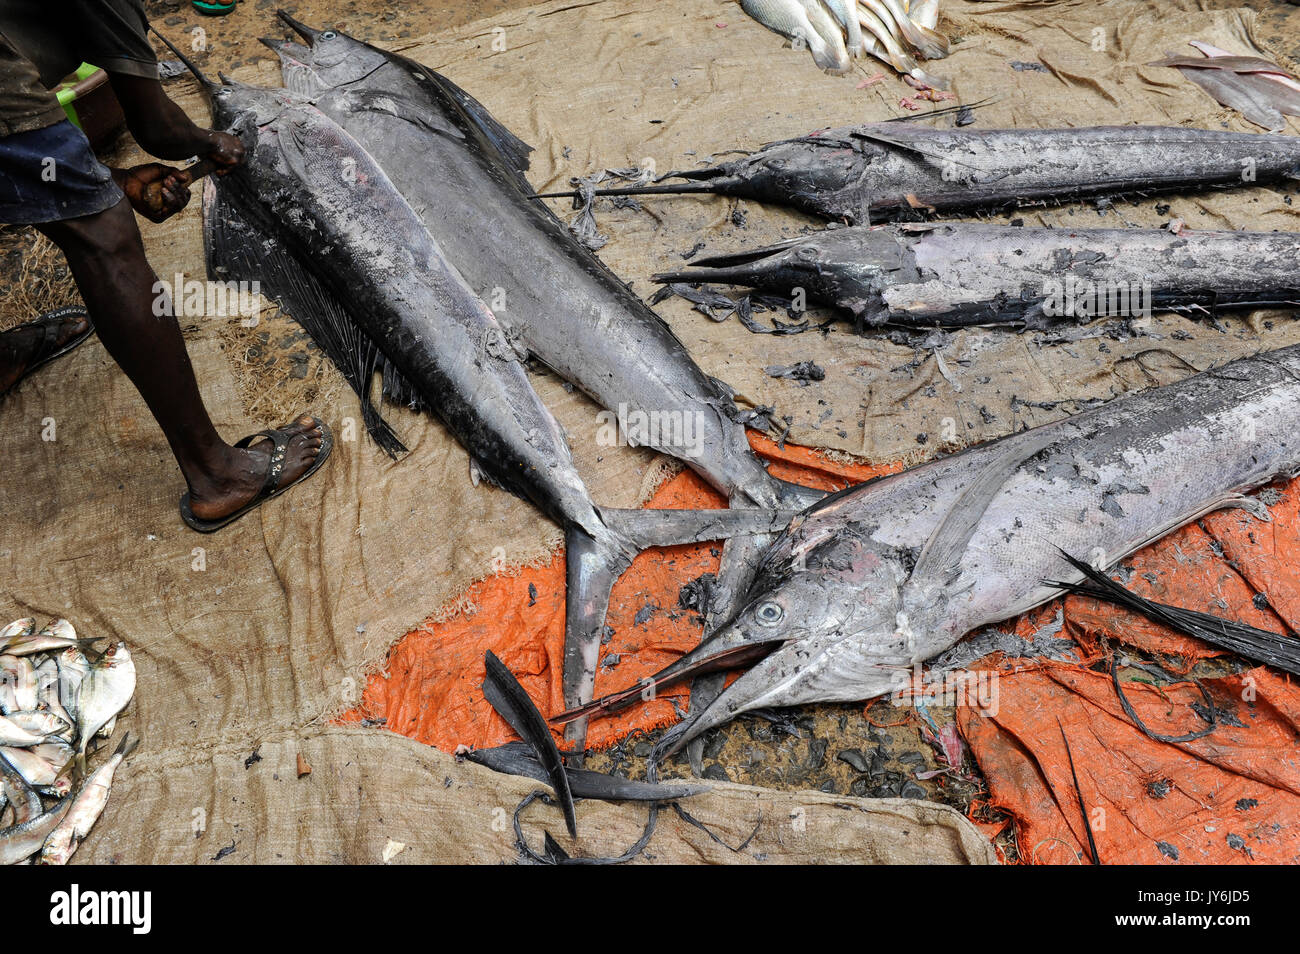 SIERRA LEONE, Tombo, marché aux poissons, le poisson épée, la sécurité alimentaire et la subsistance des petits pêcheurs de la côte d'échelle sont touchés par les gros chalutiers Banque D'Images